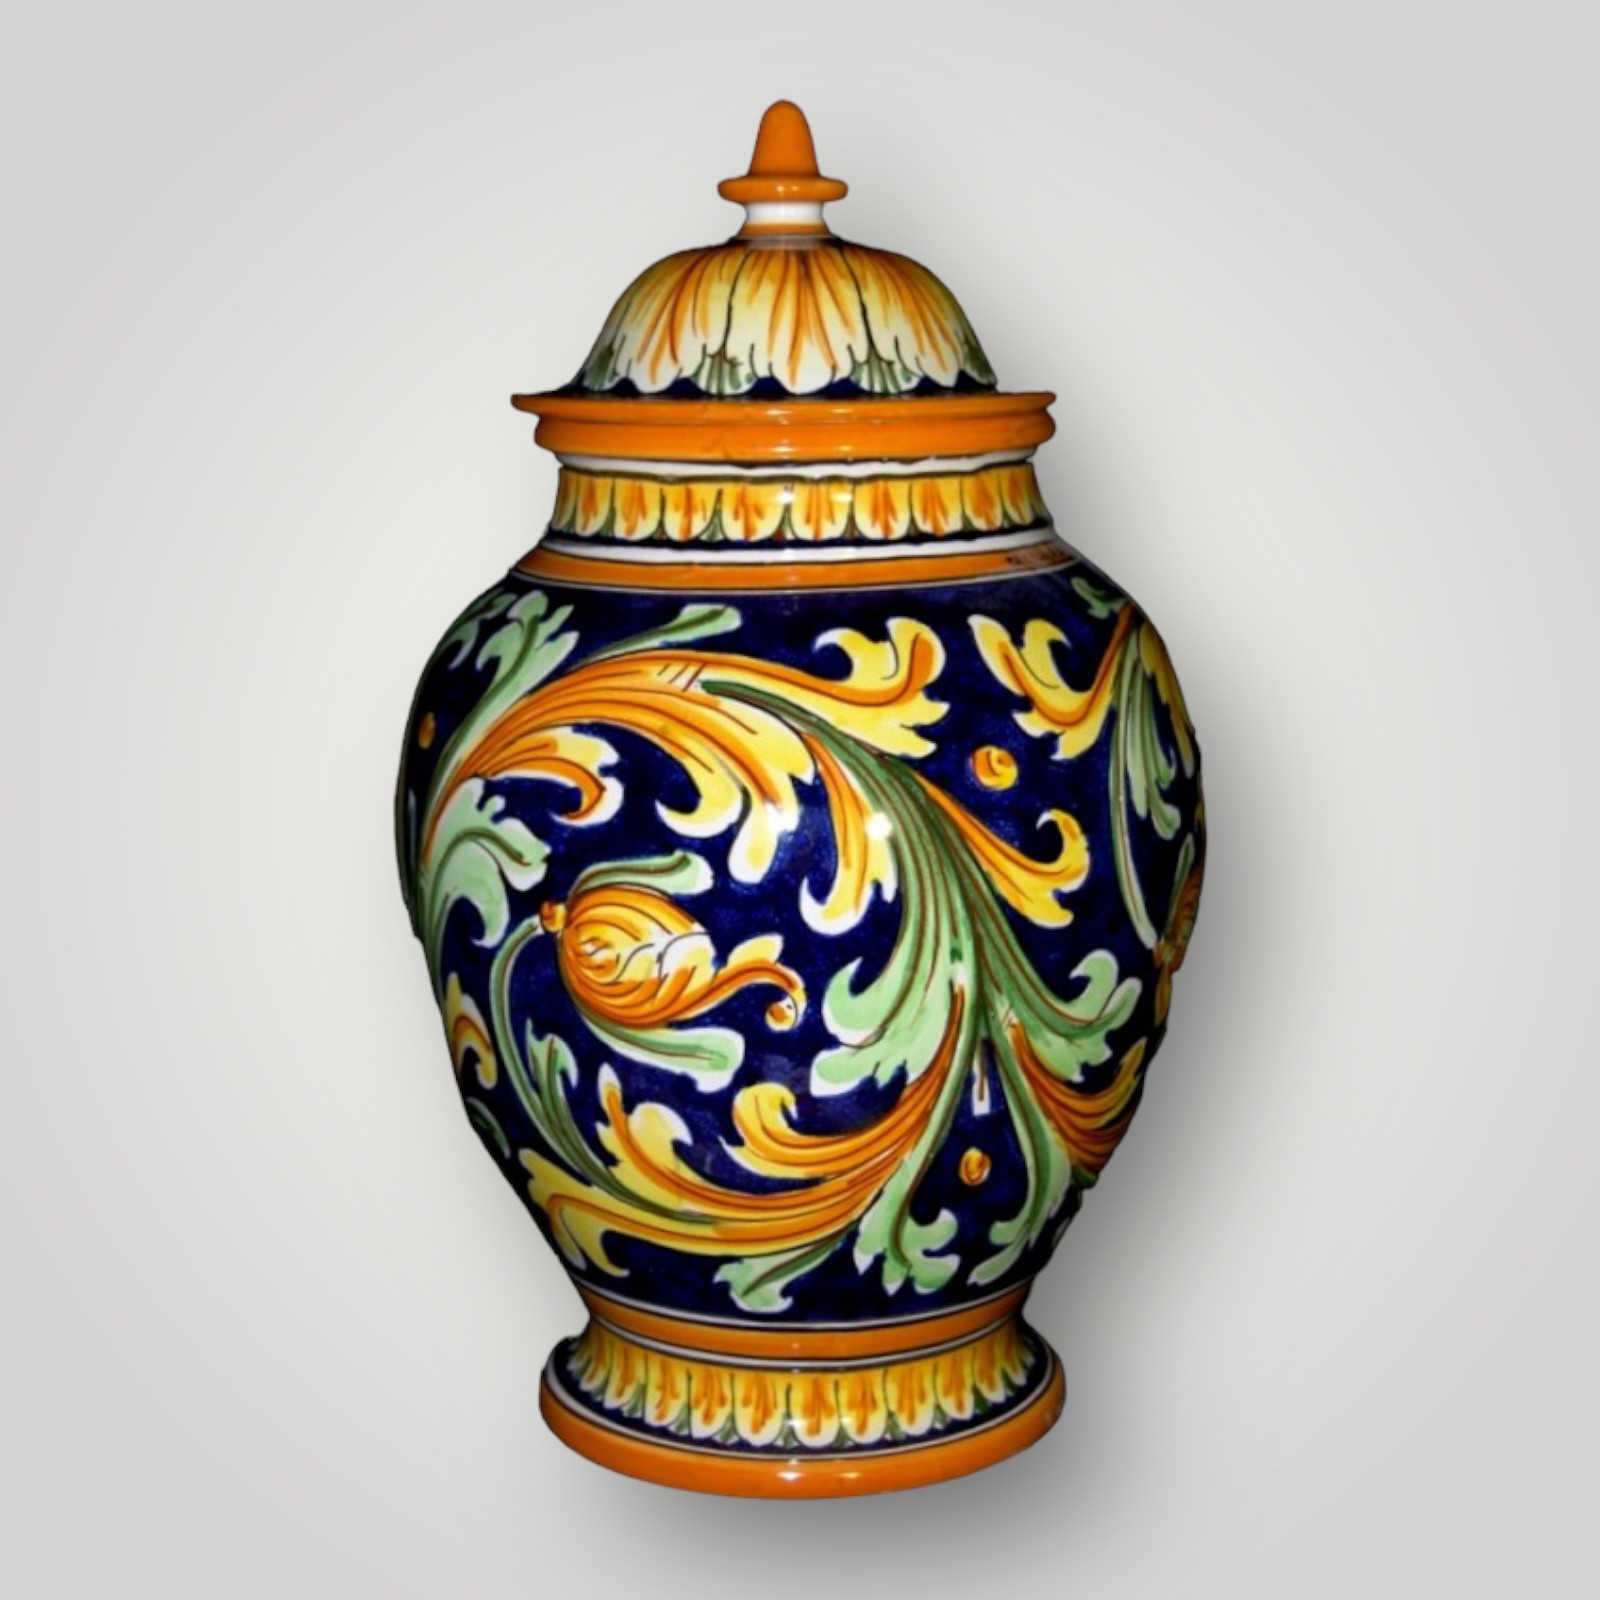 Vaso in ceramica di Caltagirone decoro del 700 blu.